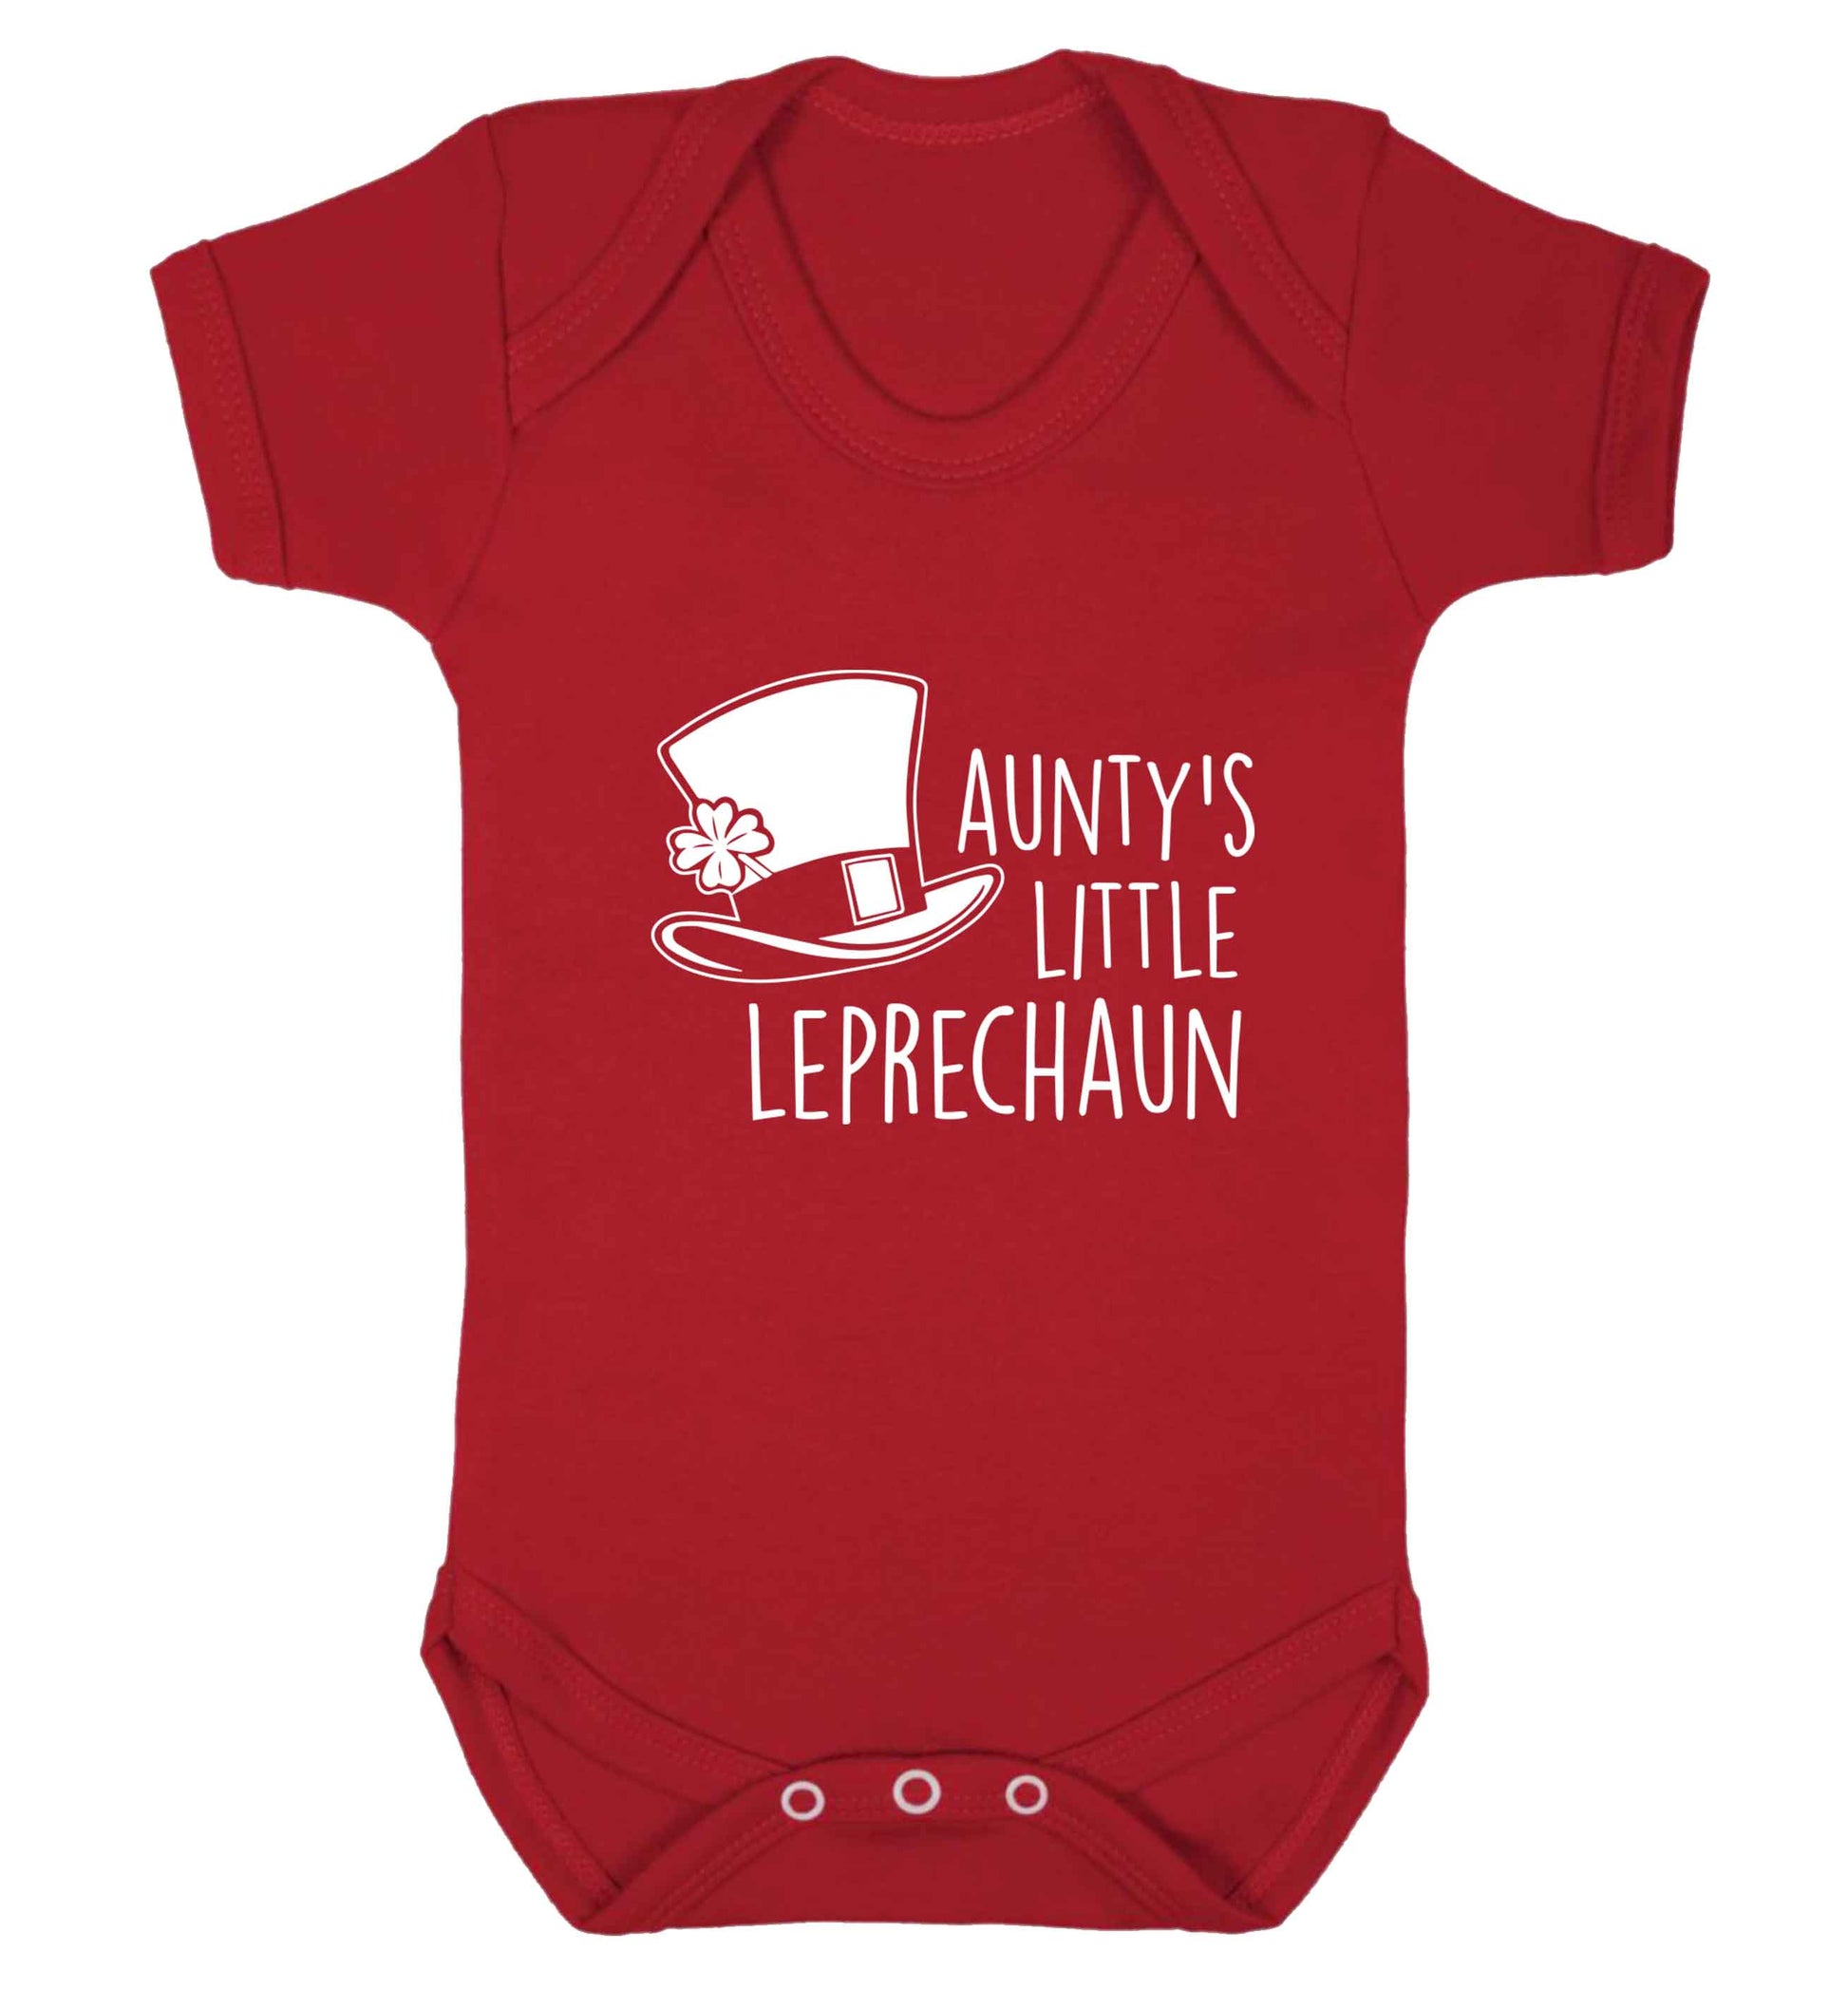 Aunty's little leprechaun baby vest red 18-24 months